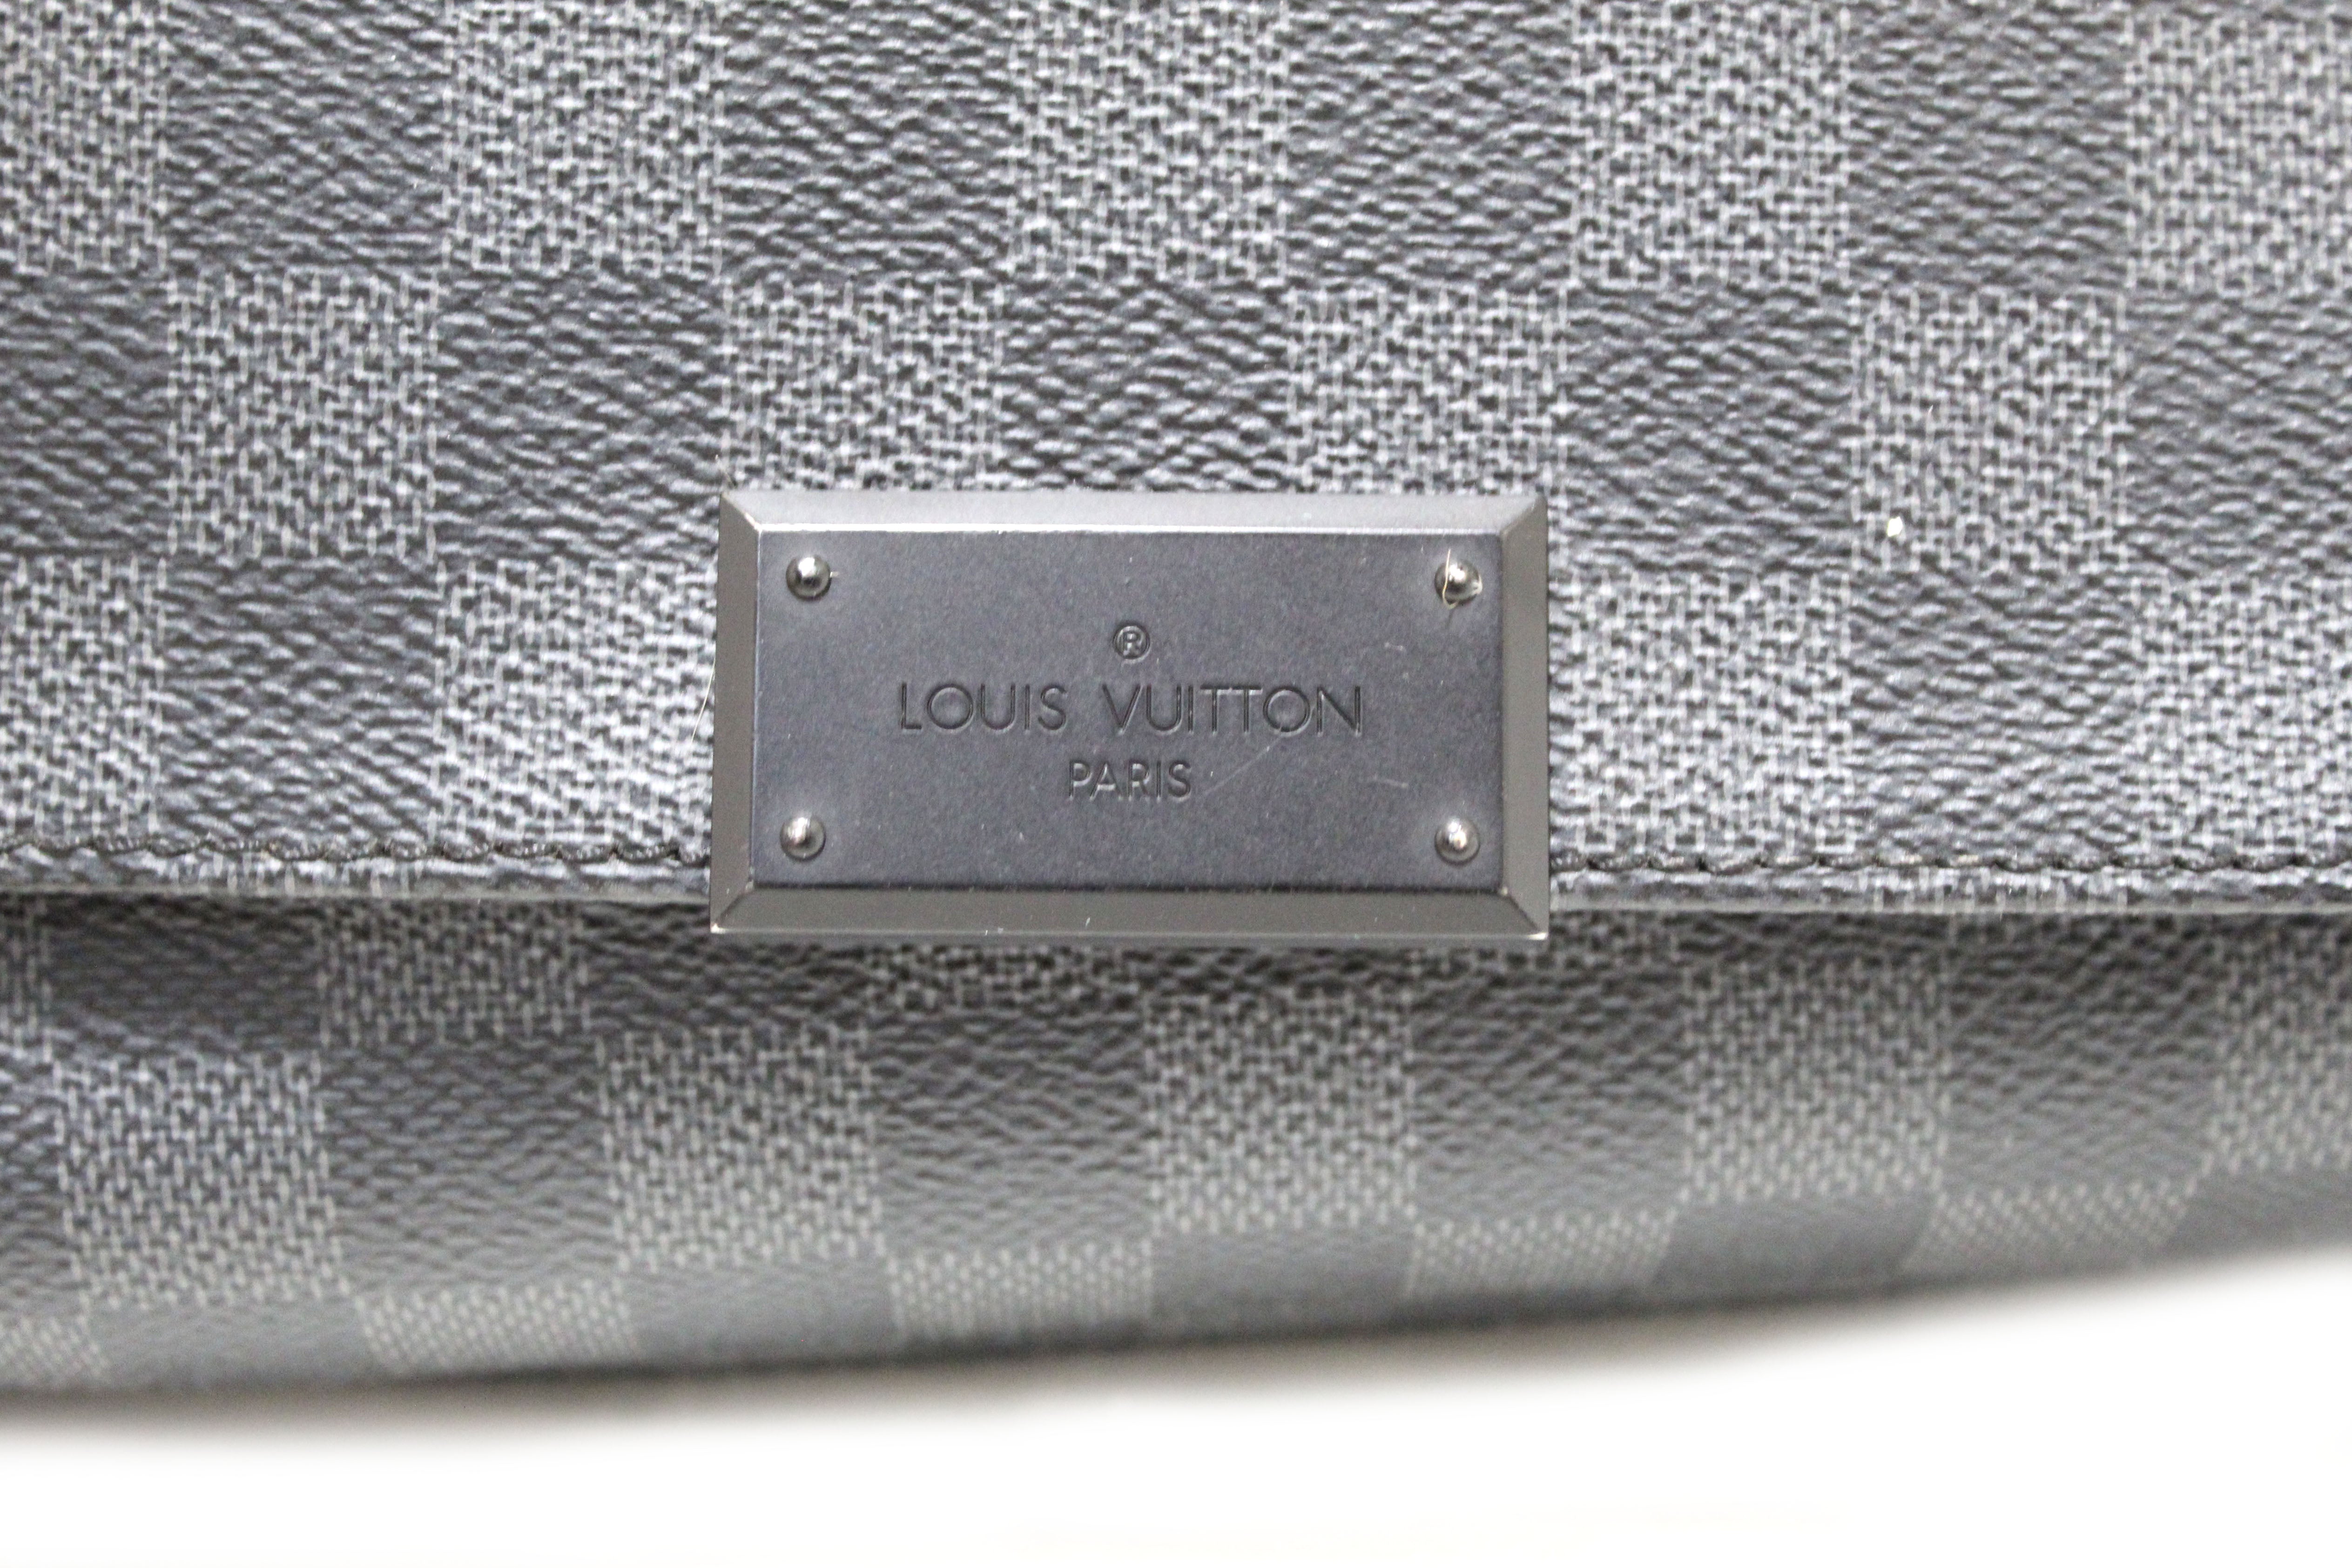 Louis Vuitton District PM Messenger Bag Damier Graphite Black